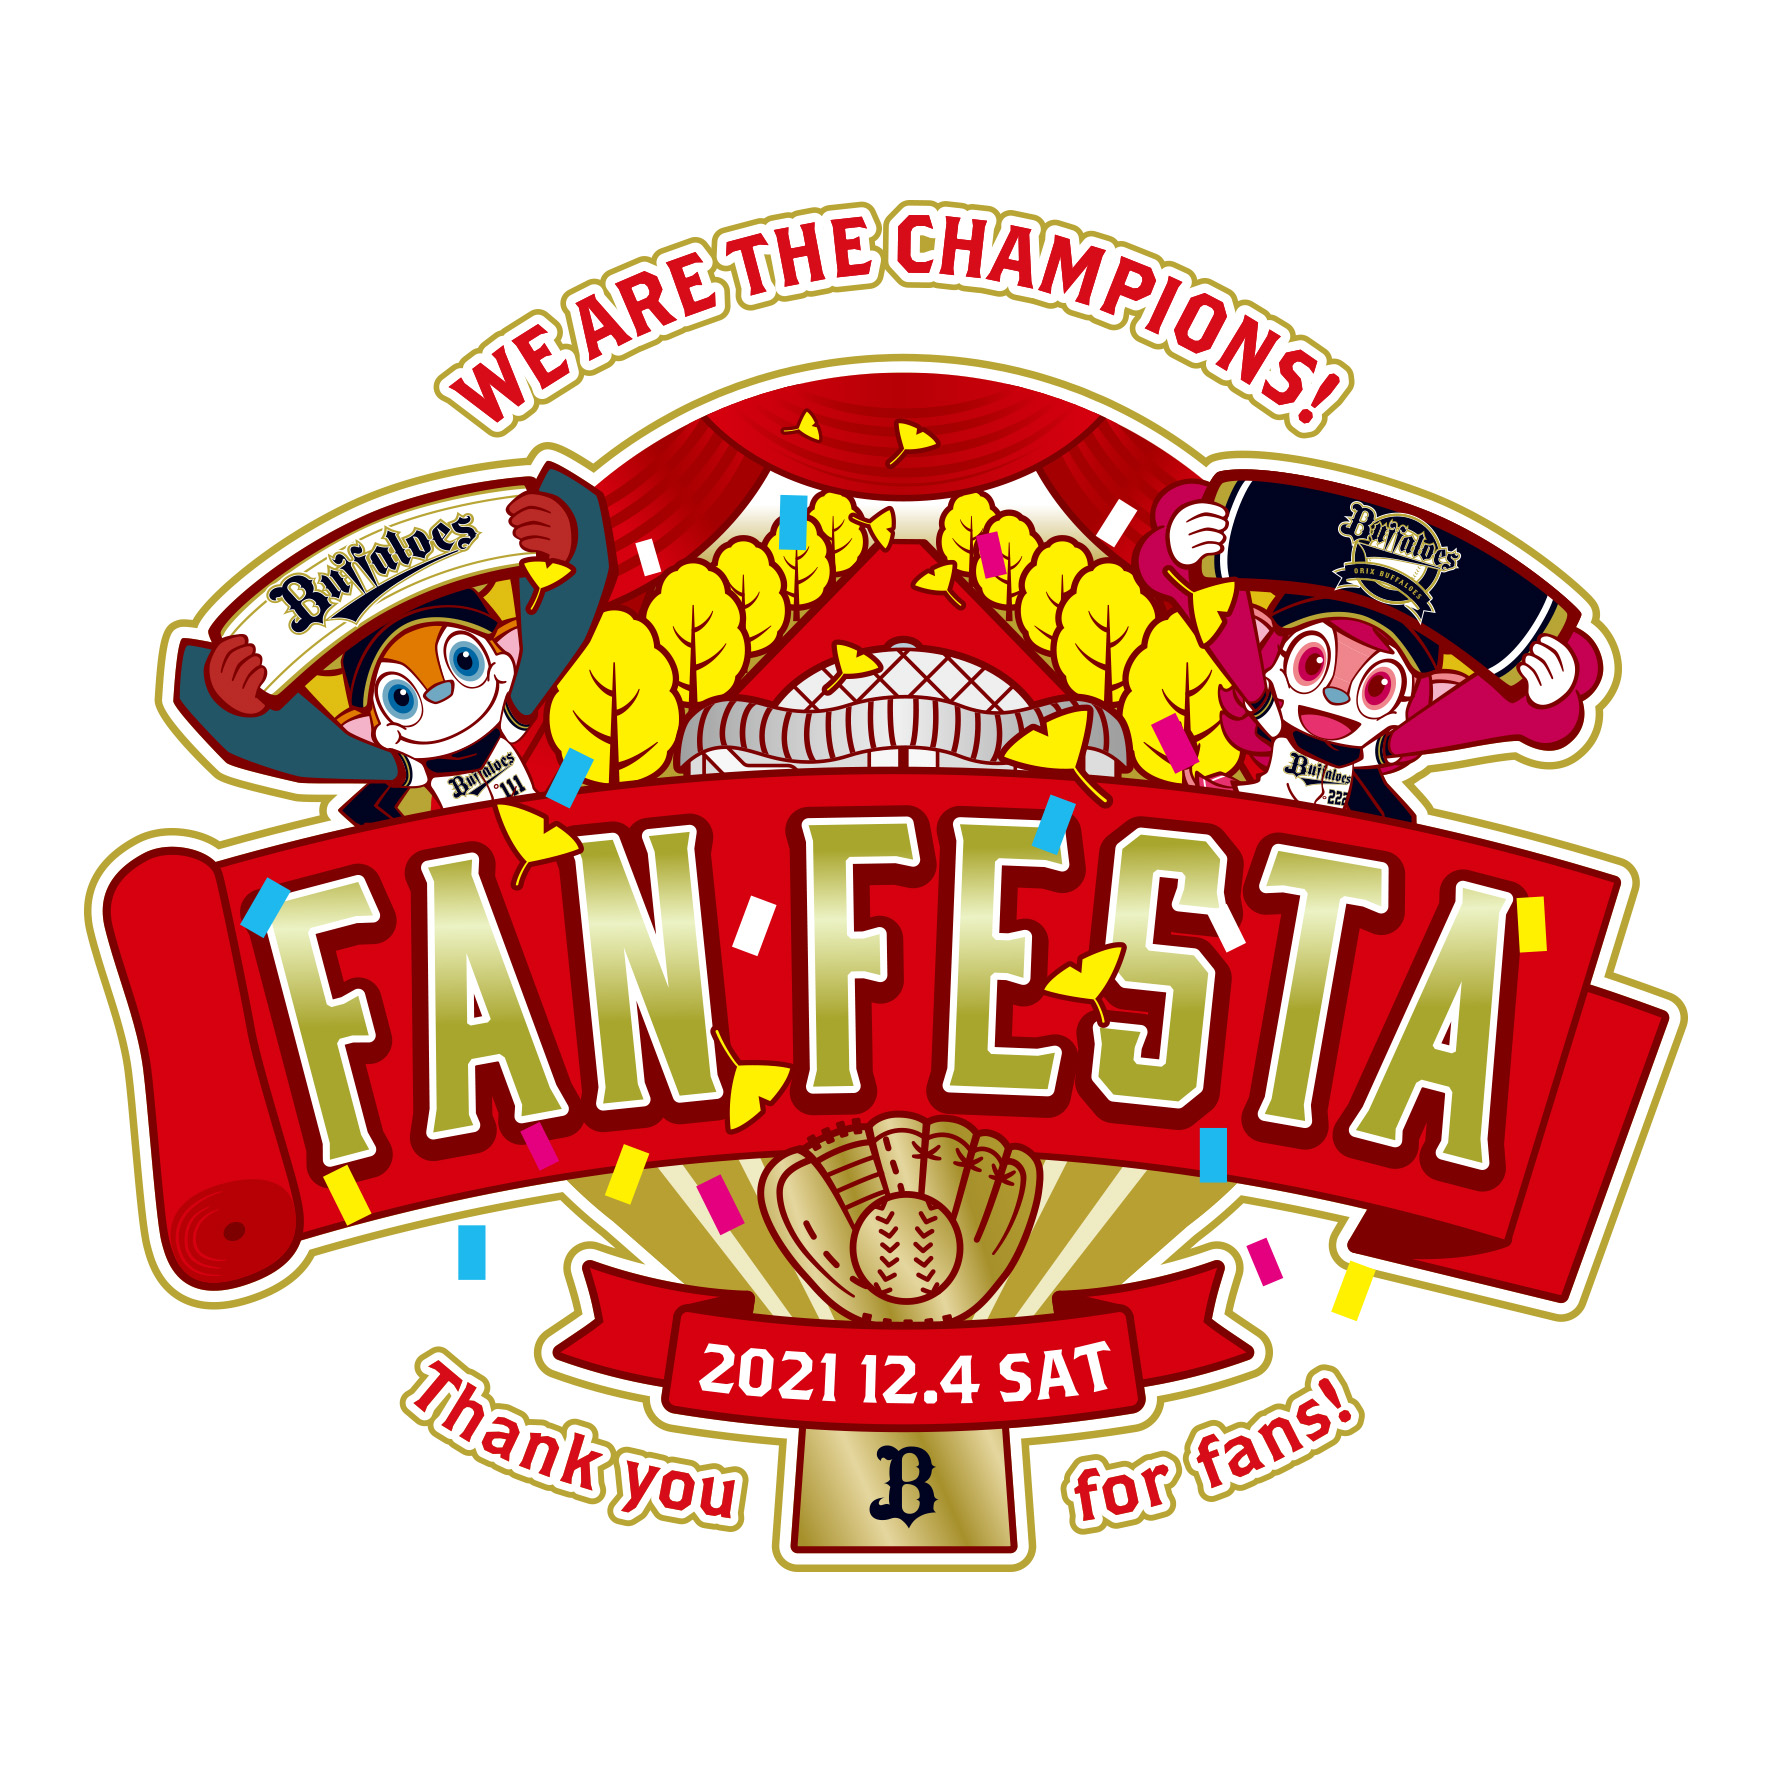 닛폰 페인트 말렛 팬 감사 이벤트 「Bs Fan-Festa(비즈 팬 페스타) 2021」의 티켓을 선물합…